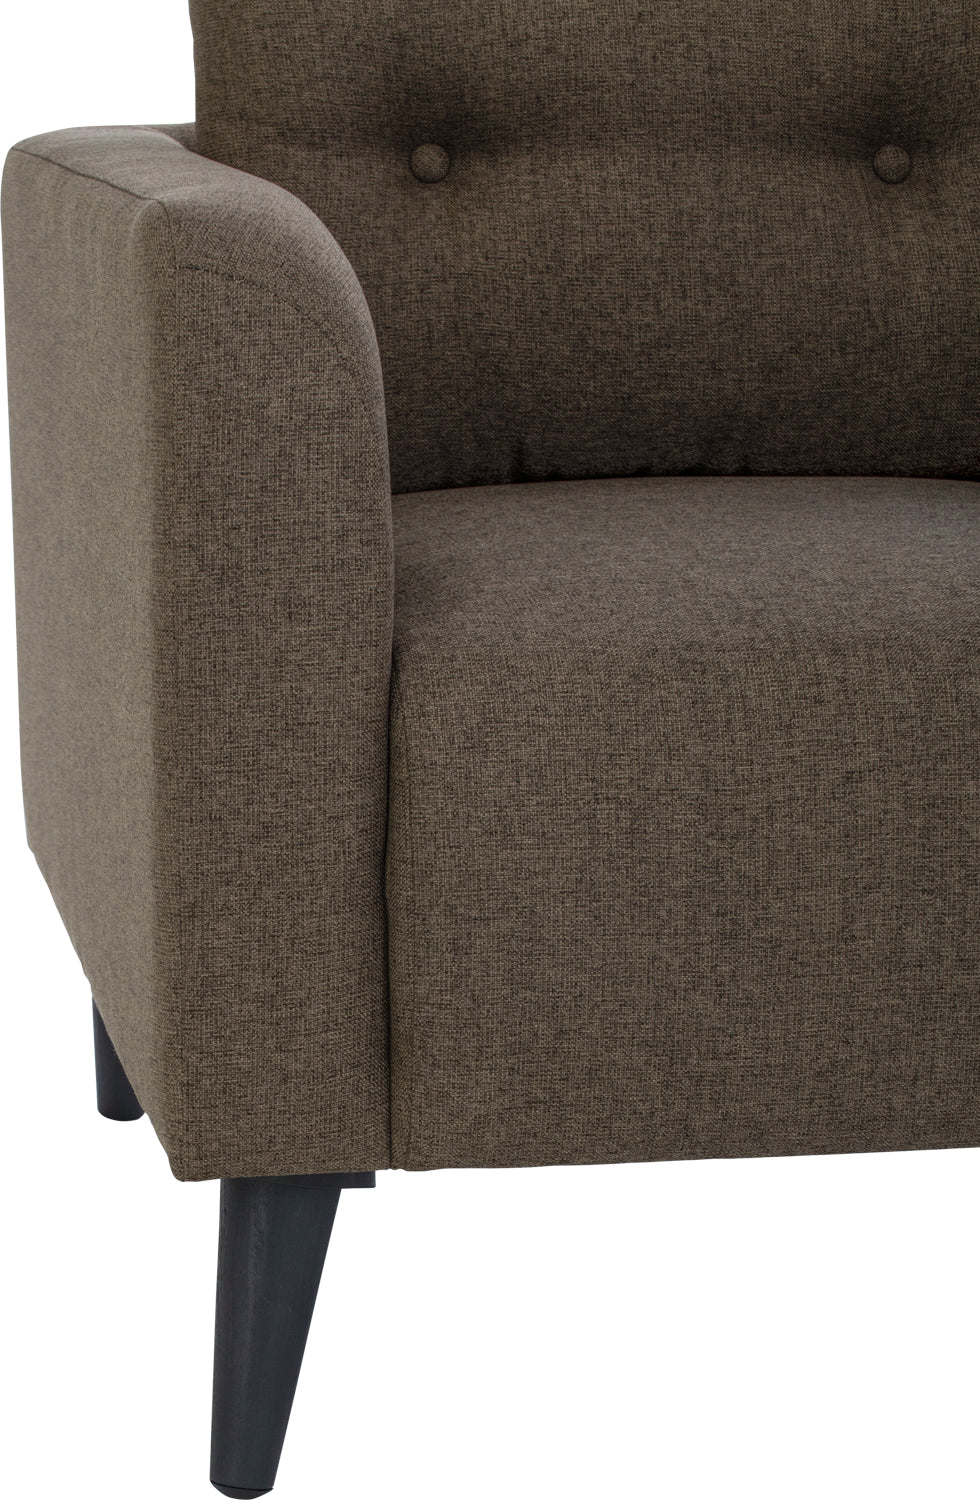 LATAR Sofa Single Seater